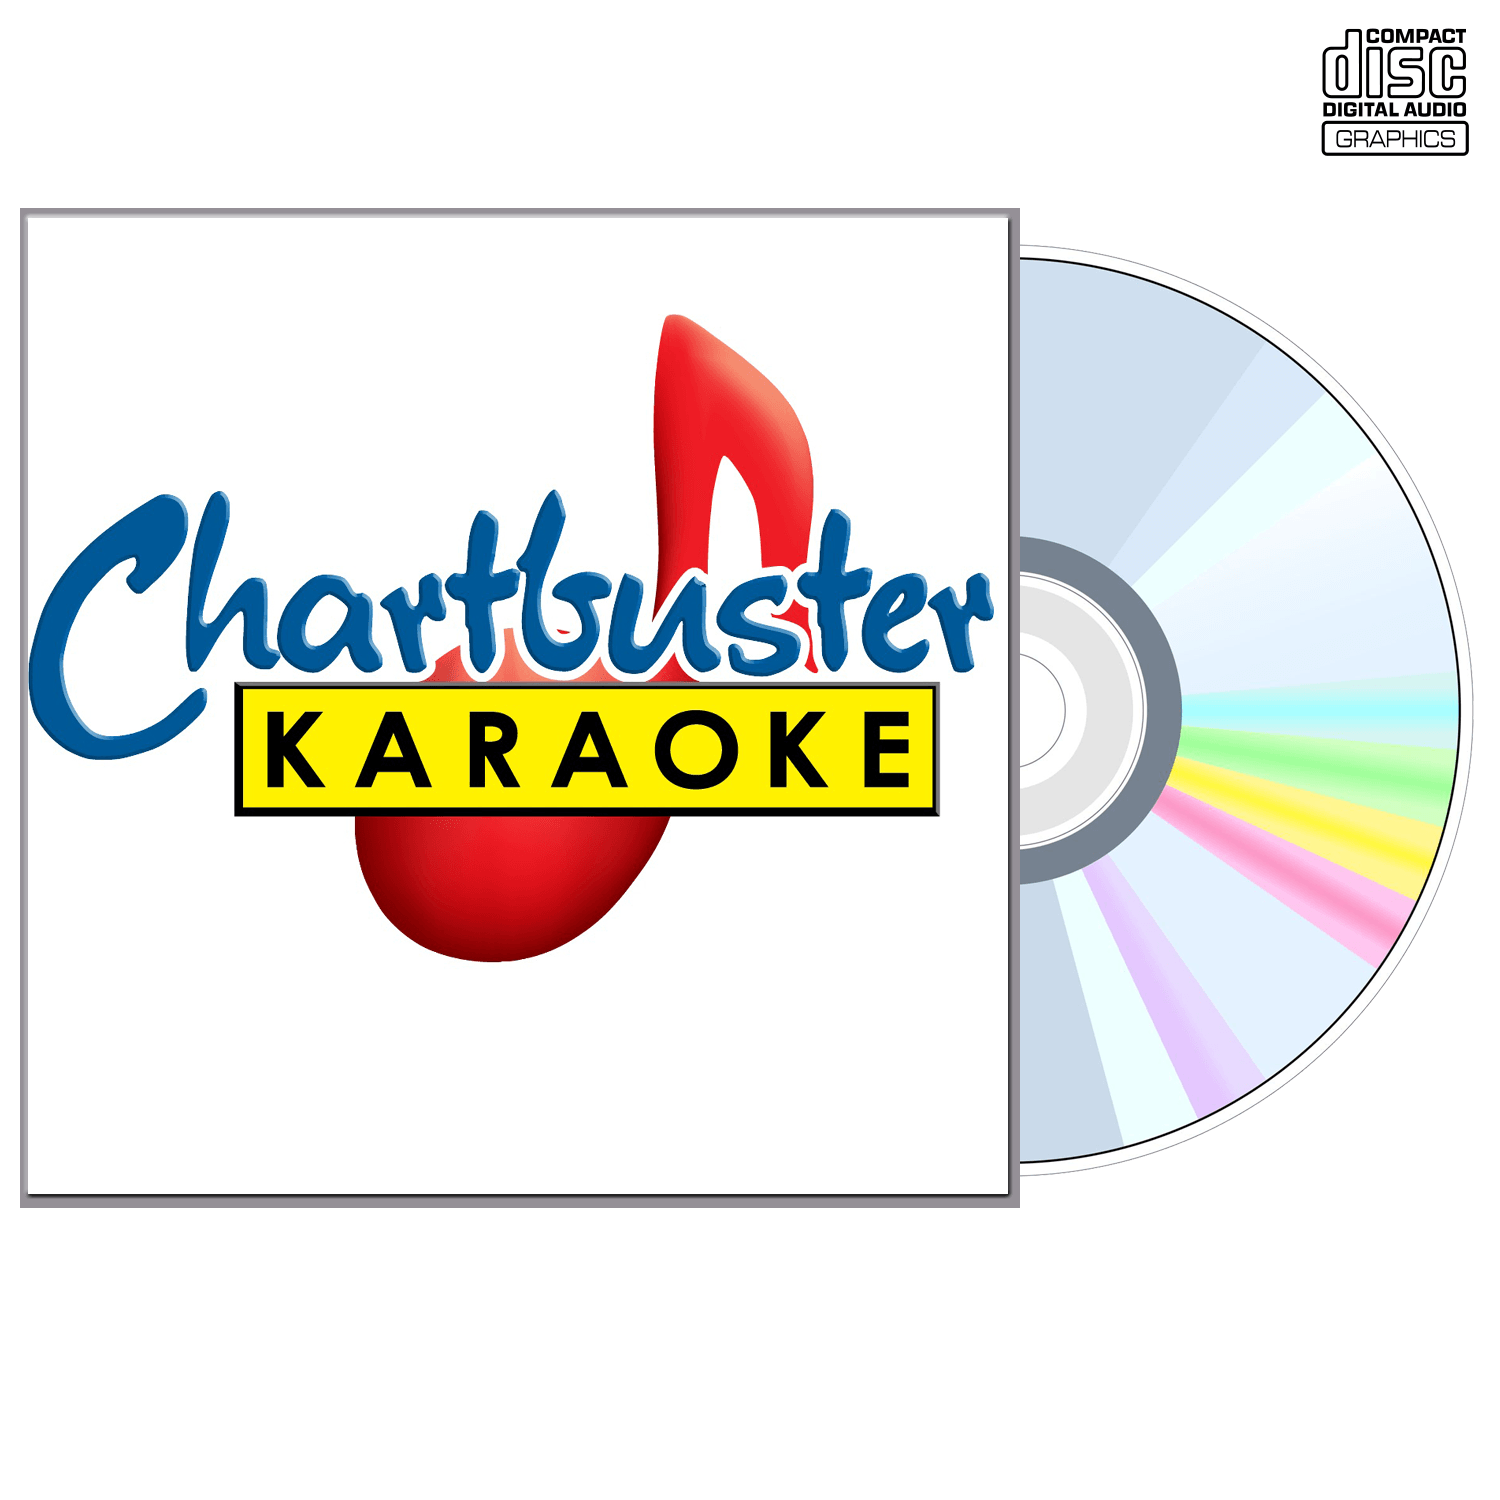 Michael Jackson Vol 3 - CD+G - Chartbuster Karaoke - Karaoke Home Entertainment